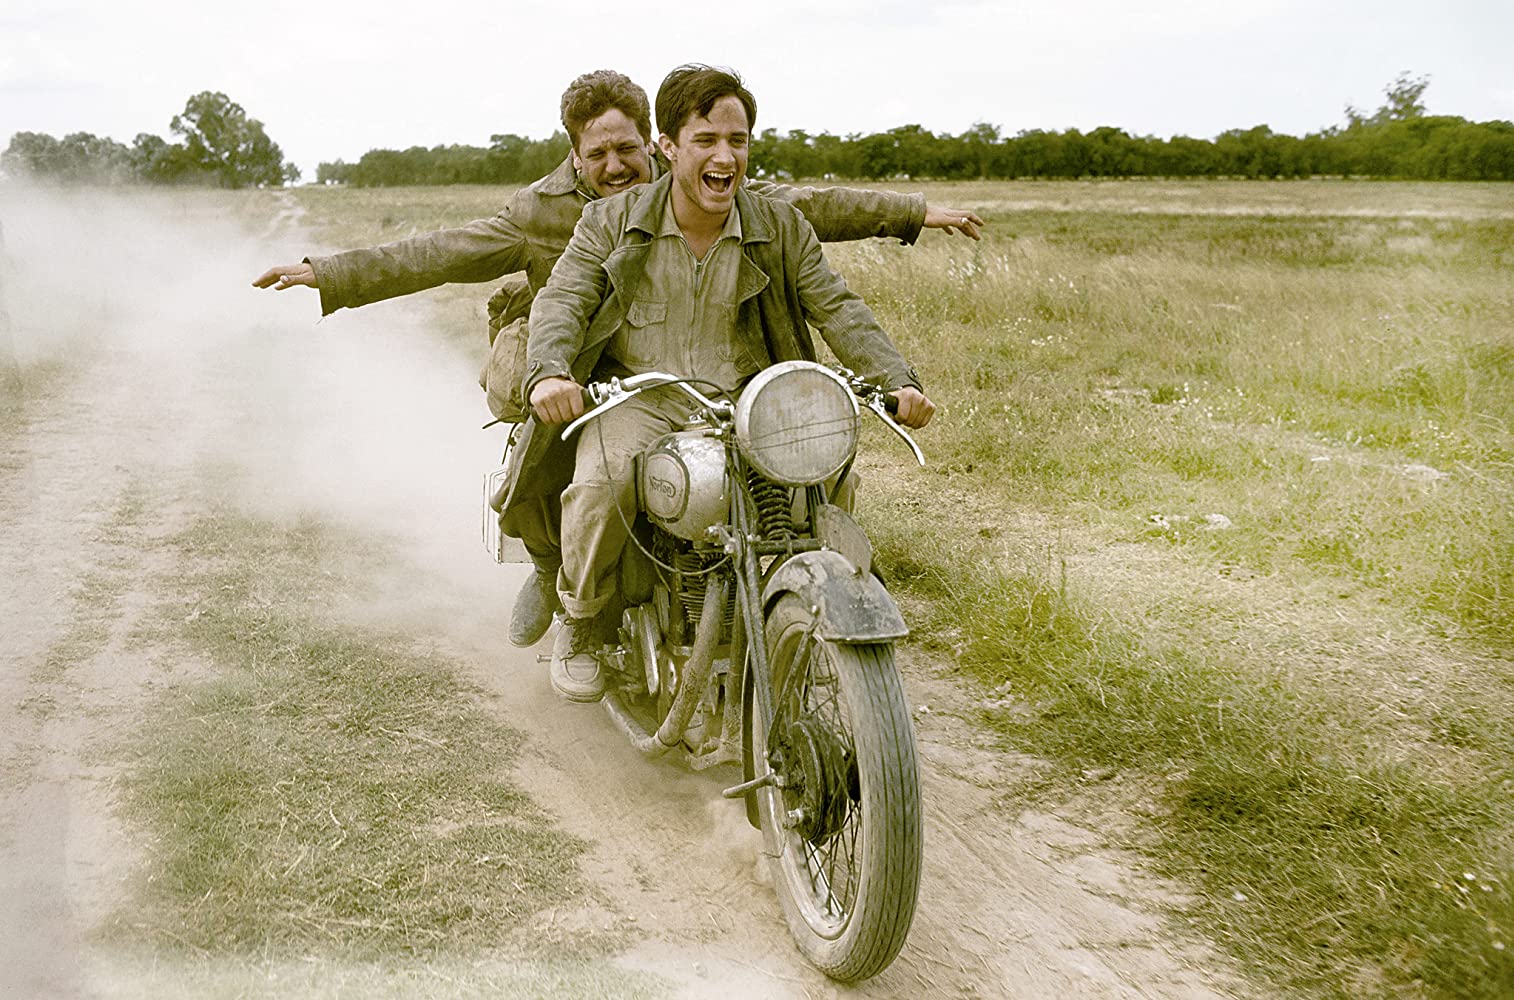 Στιγμιότυπο από την ταινία The Motorcycle Diaries με τους δύο ηθοποιούς πάνω σε μοτοσυκλέτα